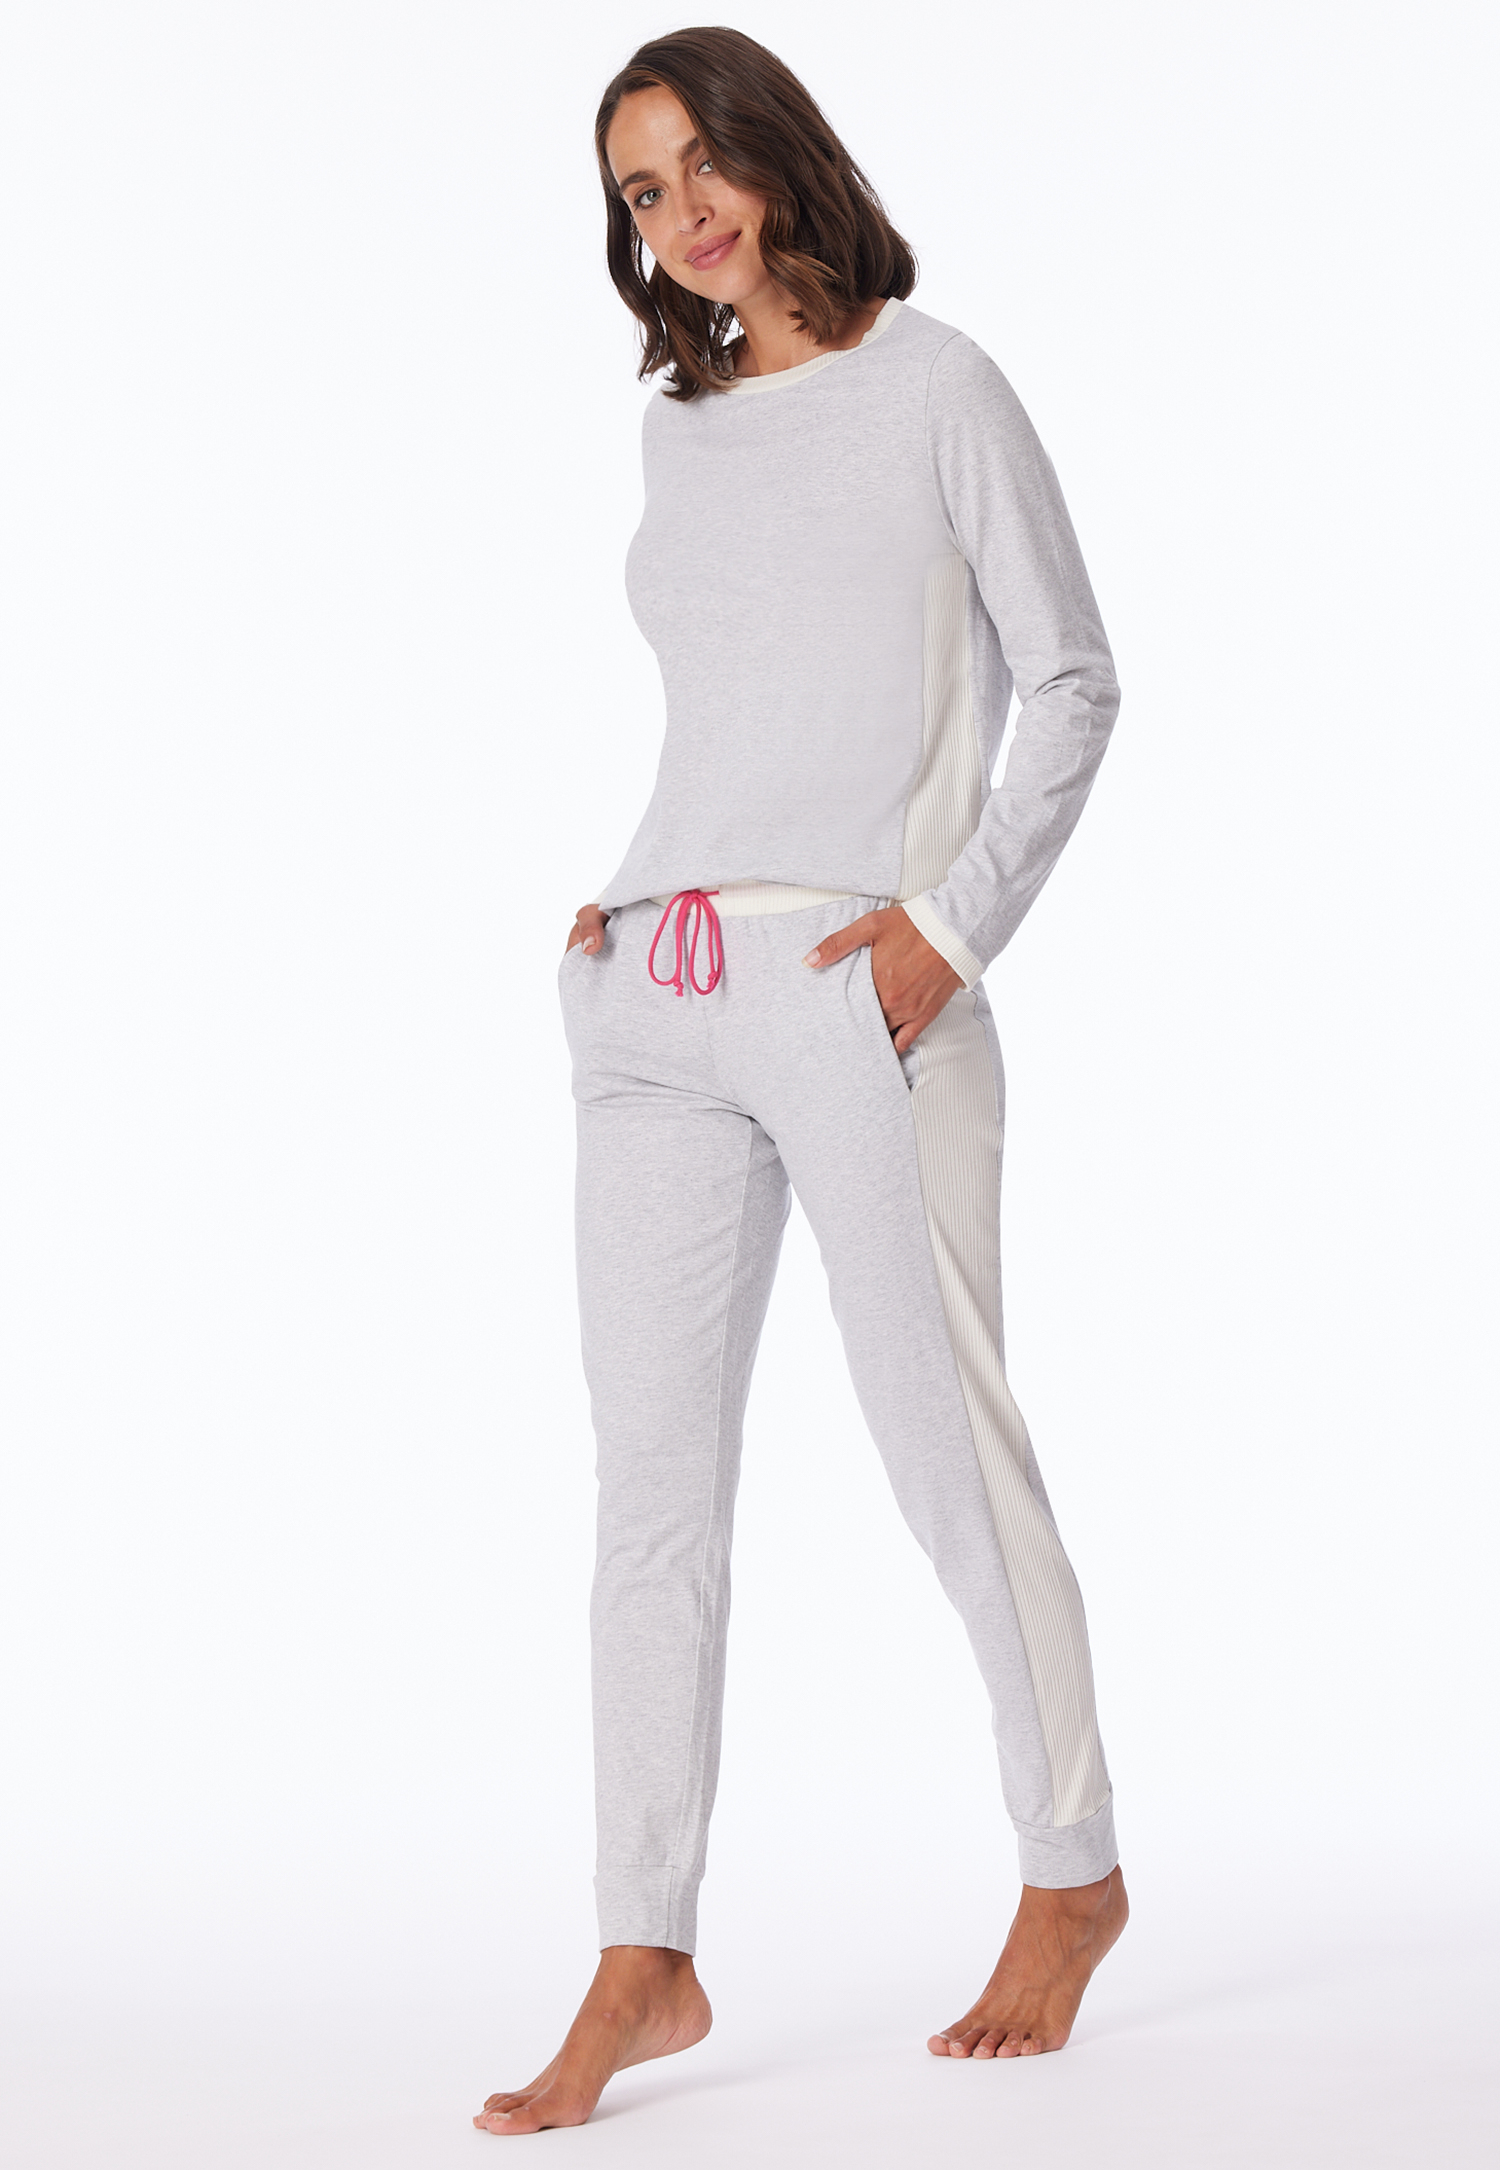 Schlafanzug lang Bio-Baumwolle grau-meliert - Casual Nightwear 40 von Schiesser